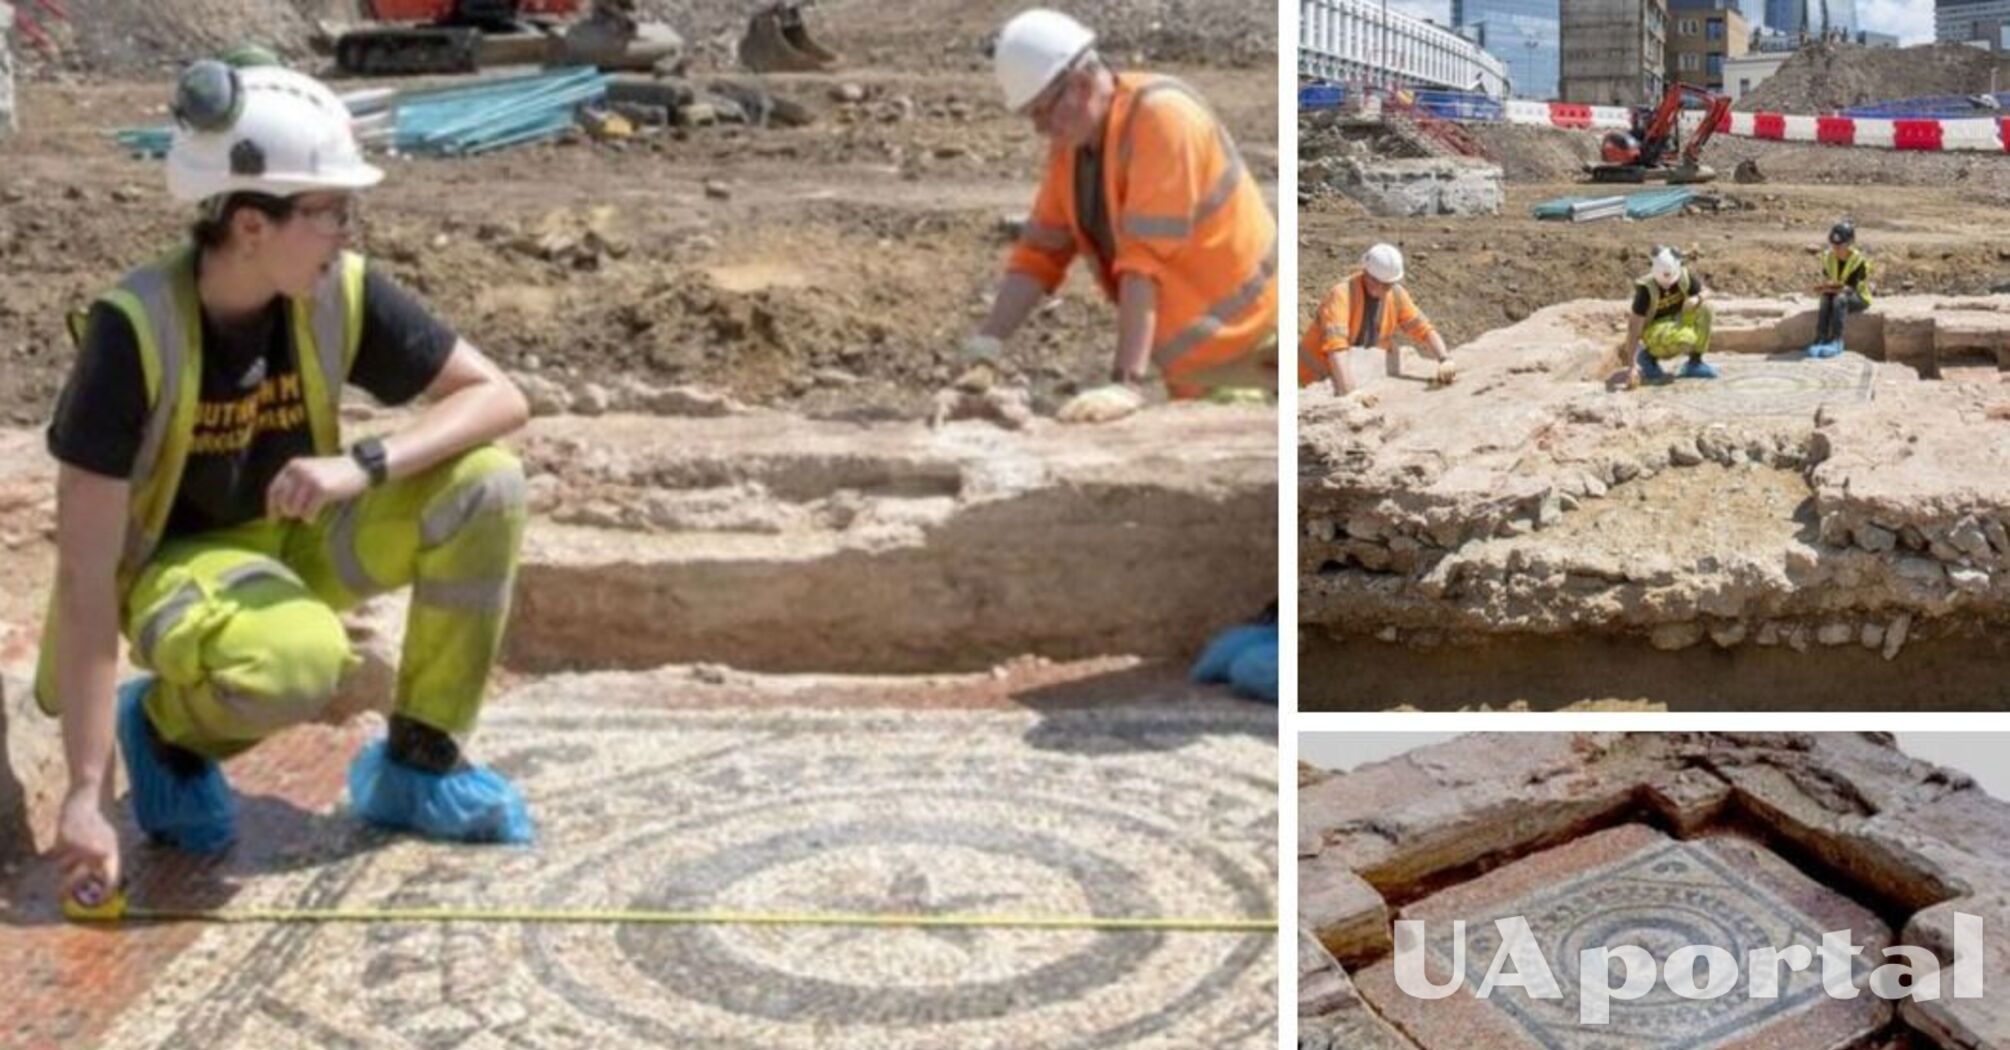 В Лондоне раскопали мавзолей древнеримских времен, где хоронили богачей (фото)